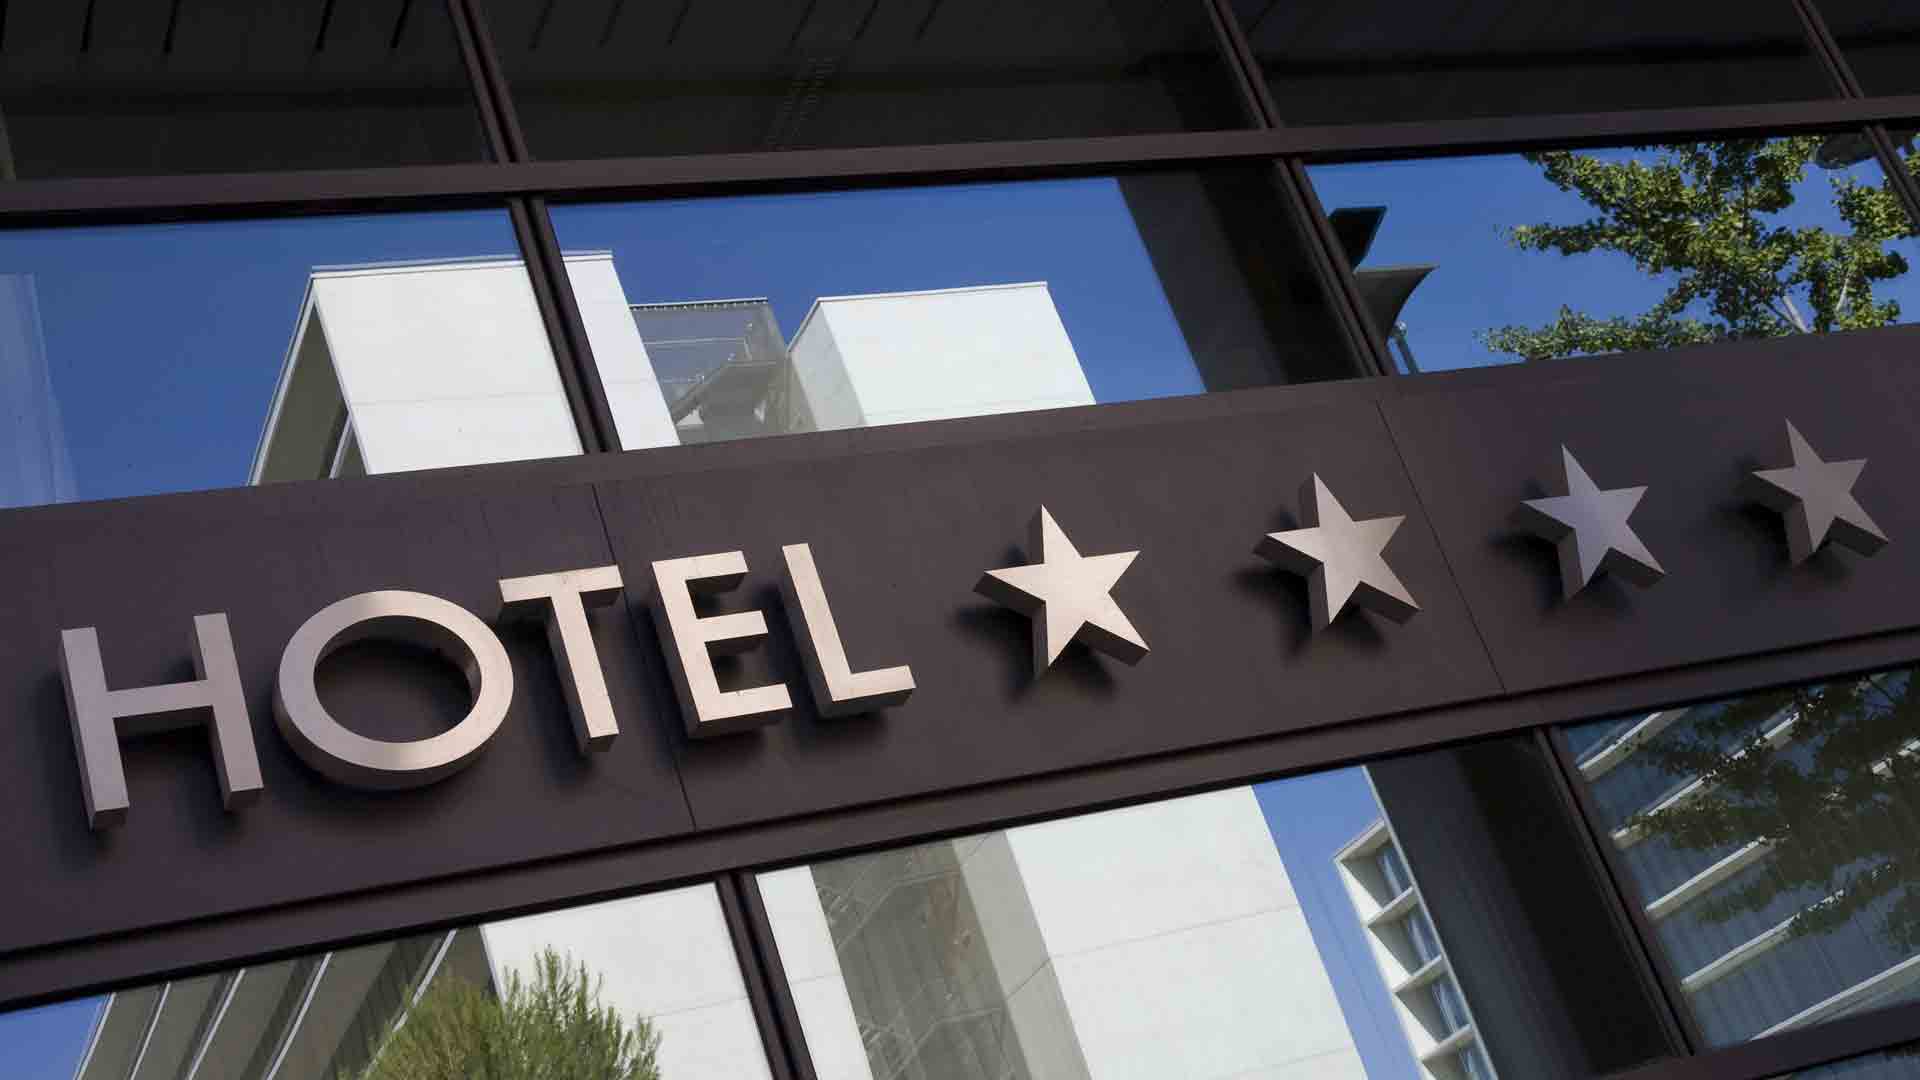 Forniture alberghiere: i migliori prodotti per hotel 4 stelle